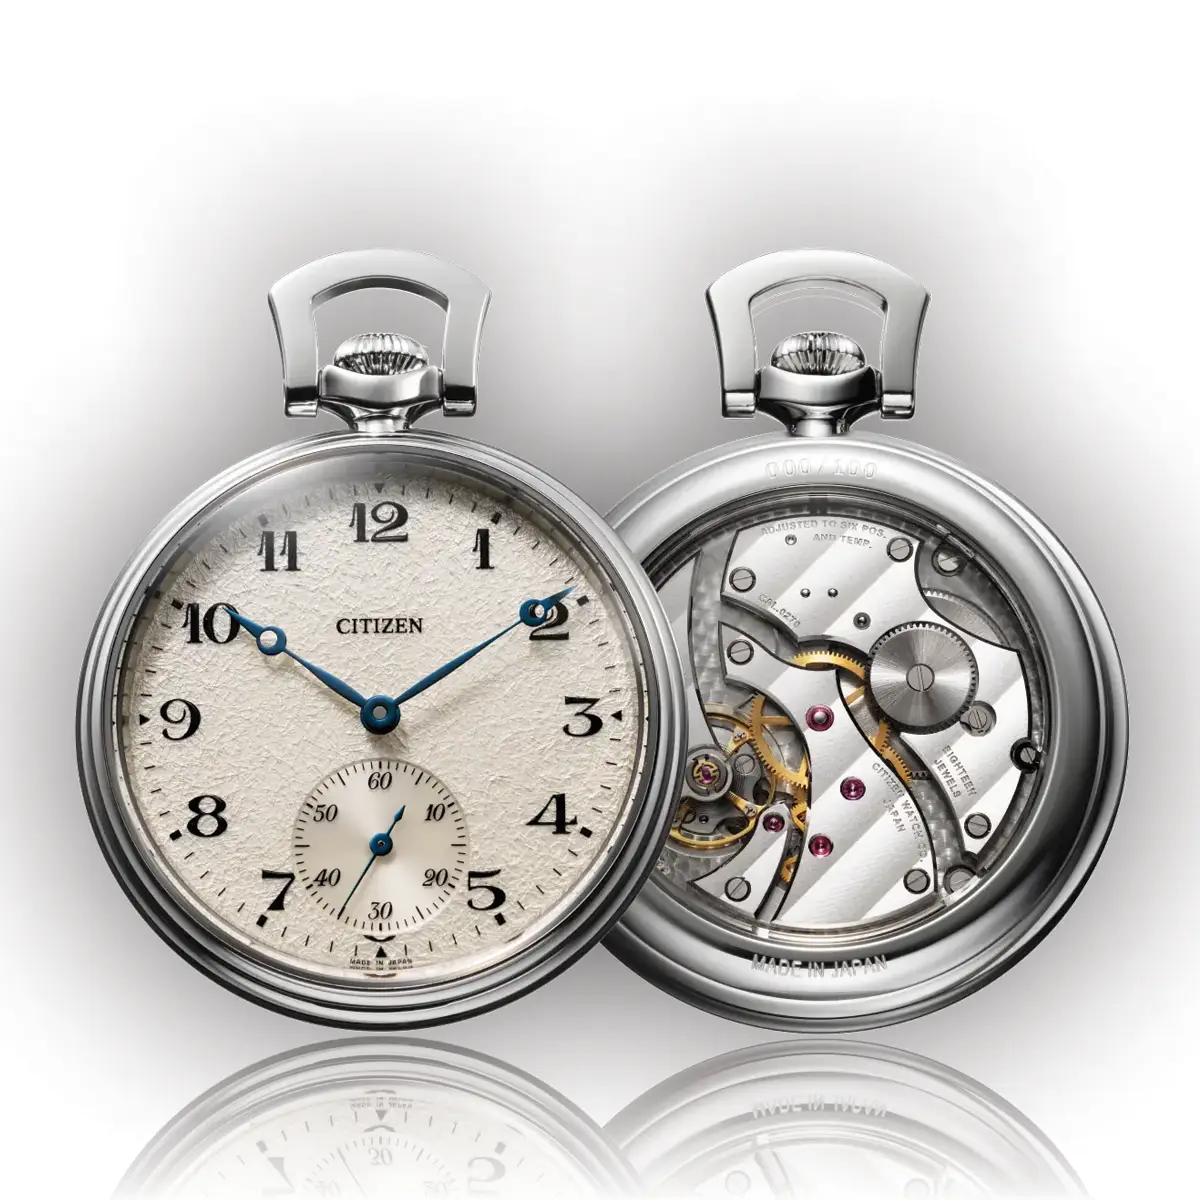 Đồng hồ The Citizen Special Limited Edition Pocket Watch NC2990-94A mặt số màu bạc. Dây đeo bằng vải. Thân vỏ bằng titanium.